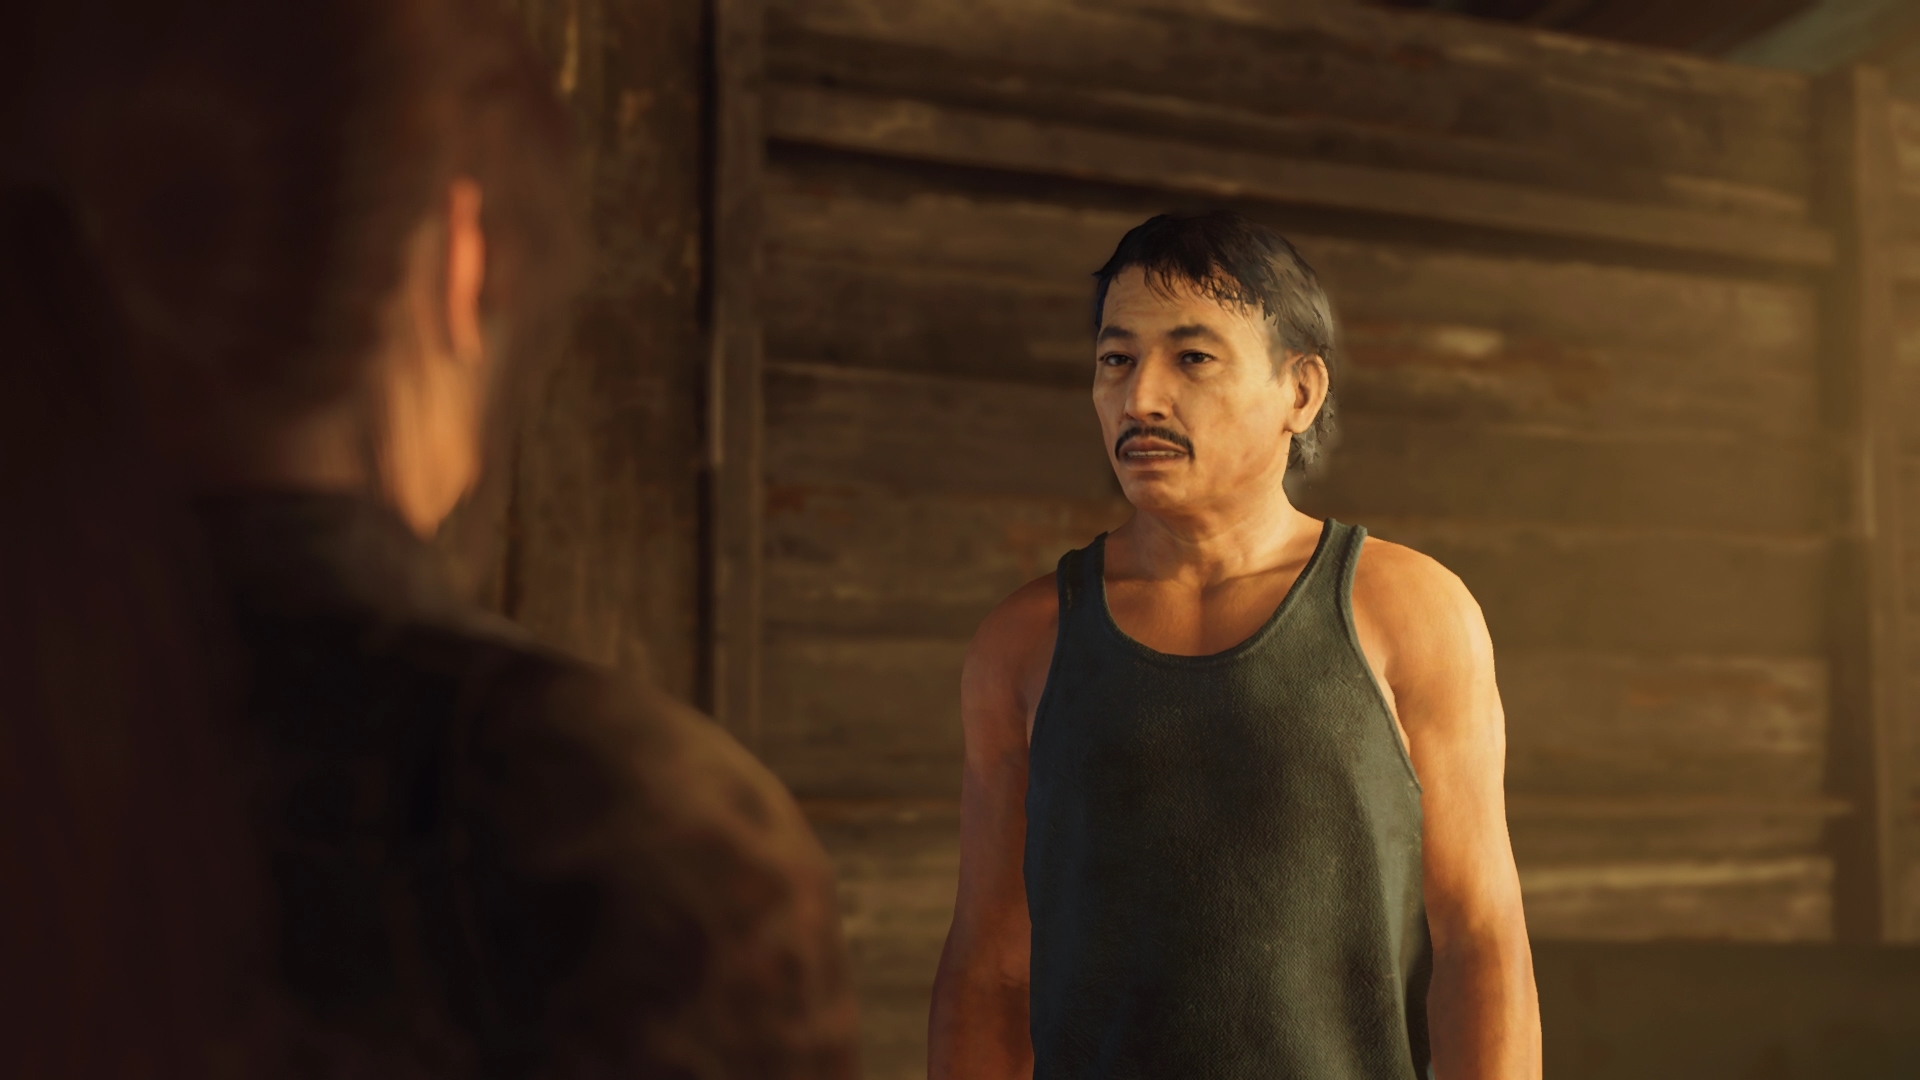 Прохождение всех побочных заданий в Shadow of the Tomb Raider